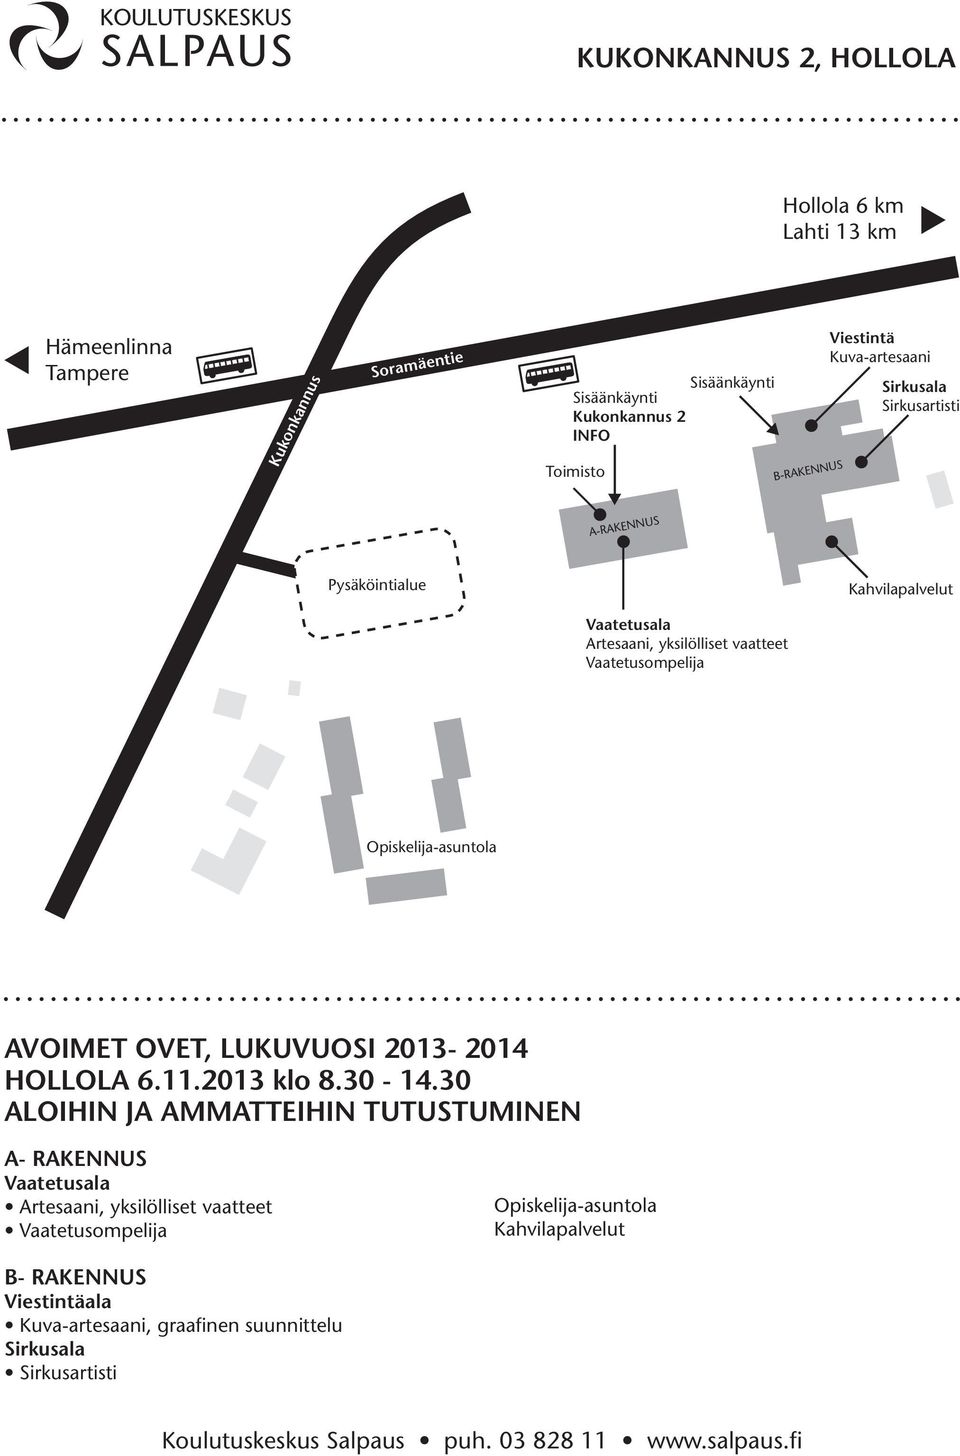 Vaatetusompelija Opiskelija-asuntola AVOIMET OVET, LUKUVUOSI 2013-2014 HOLLOLA 6.11.2013 klo 8.30-14.